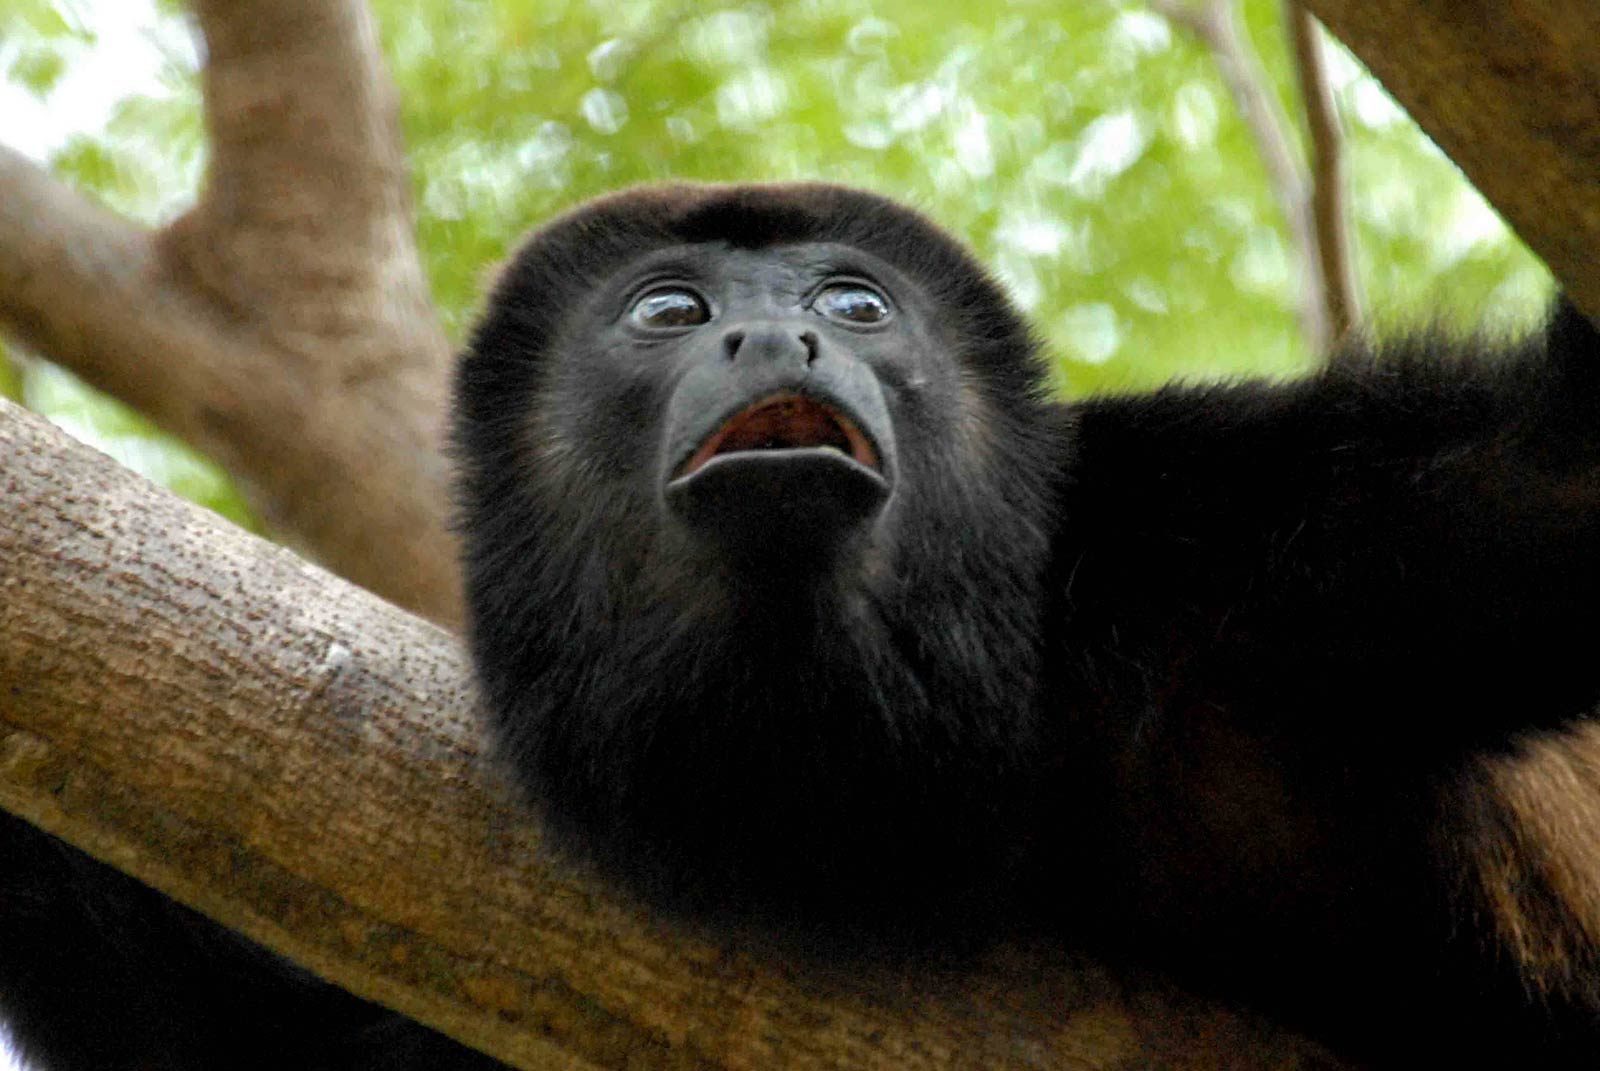 Mono tití amazónico valuado en $ 10.000 fue robado del zoológico de Palm Beach